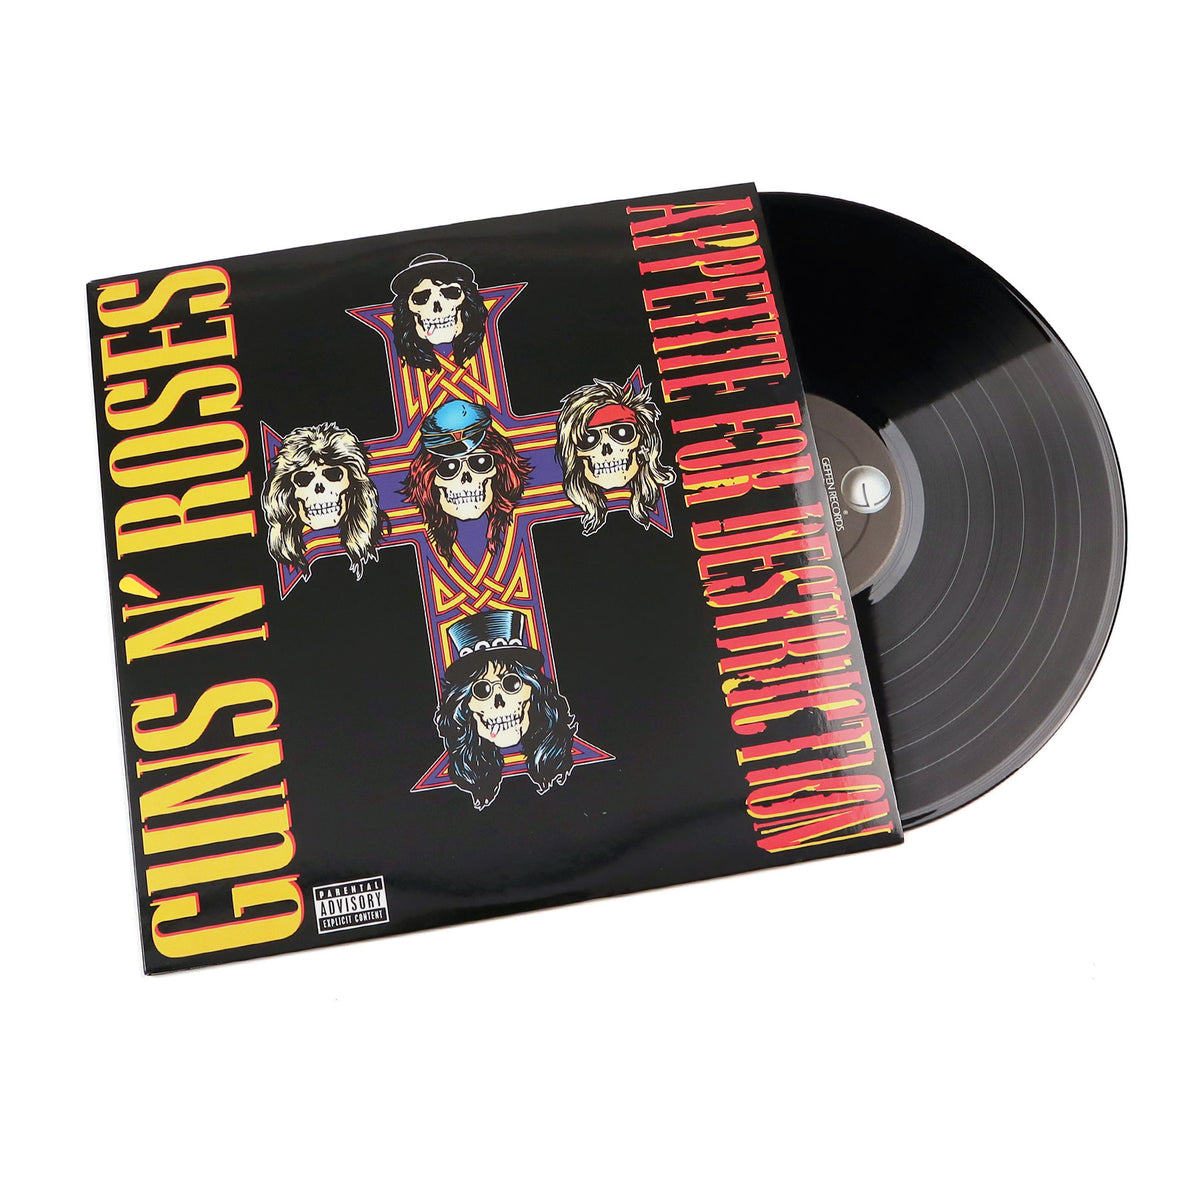 Vinilo Guns N' Roses Appetite For Destruction